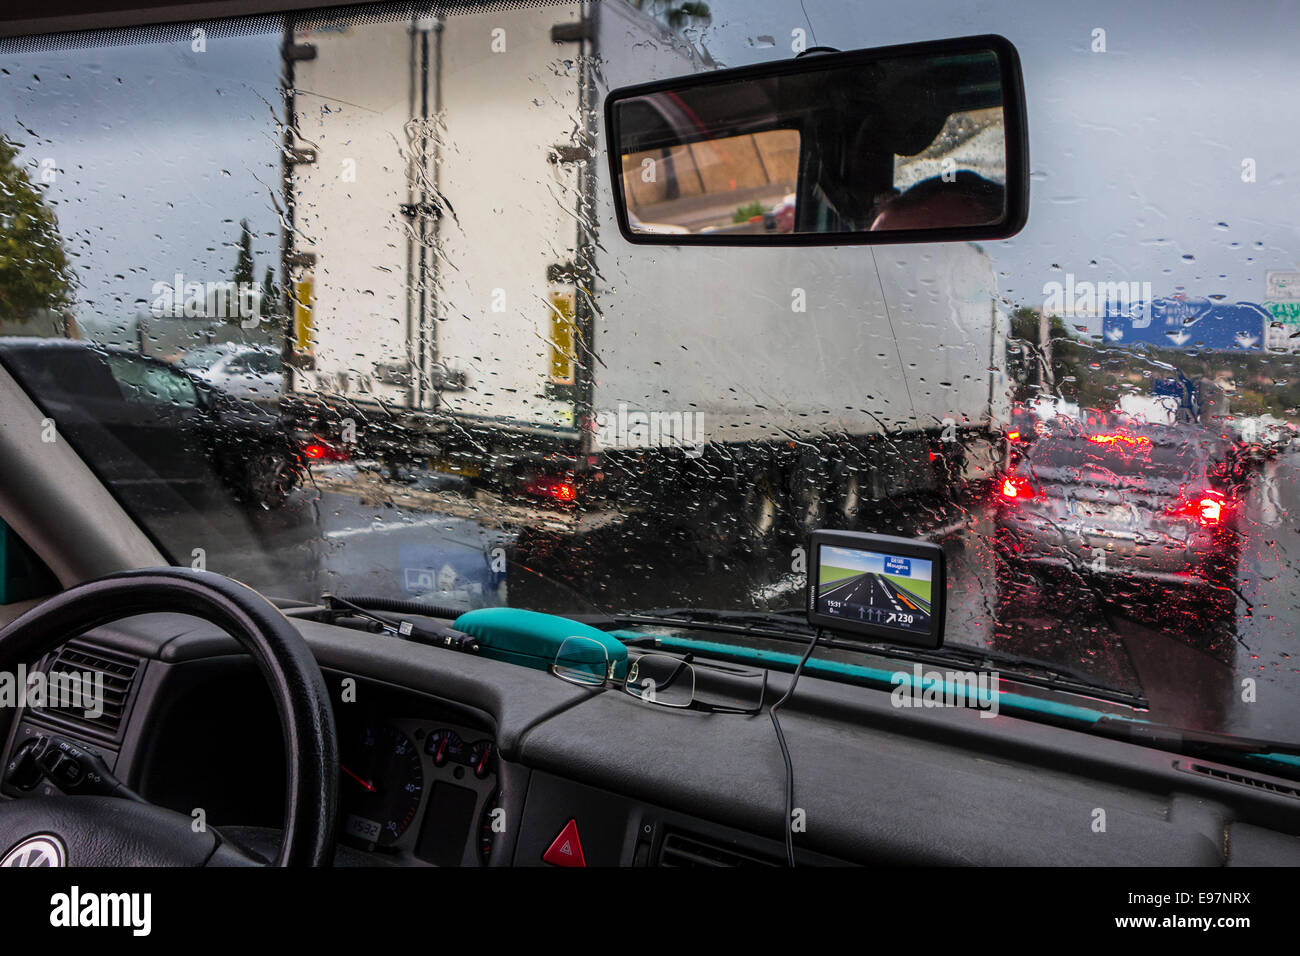 Les dépassements de camions voitures sur l'autoroute pendant une forte pluie douche vu de l'intérieur du véhicule avec de grandes gouttes sur le pare-brise Banque D'Images